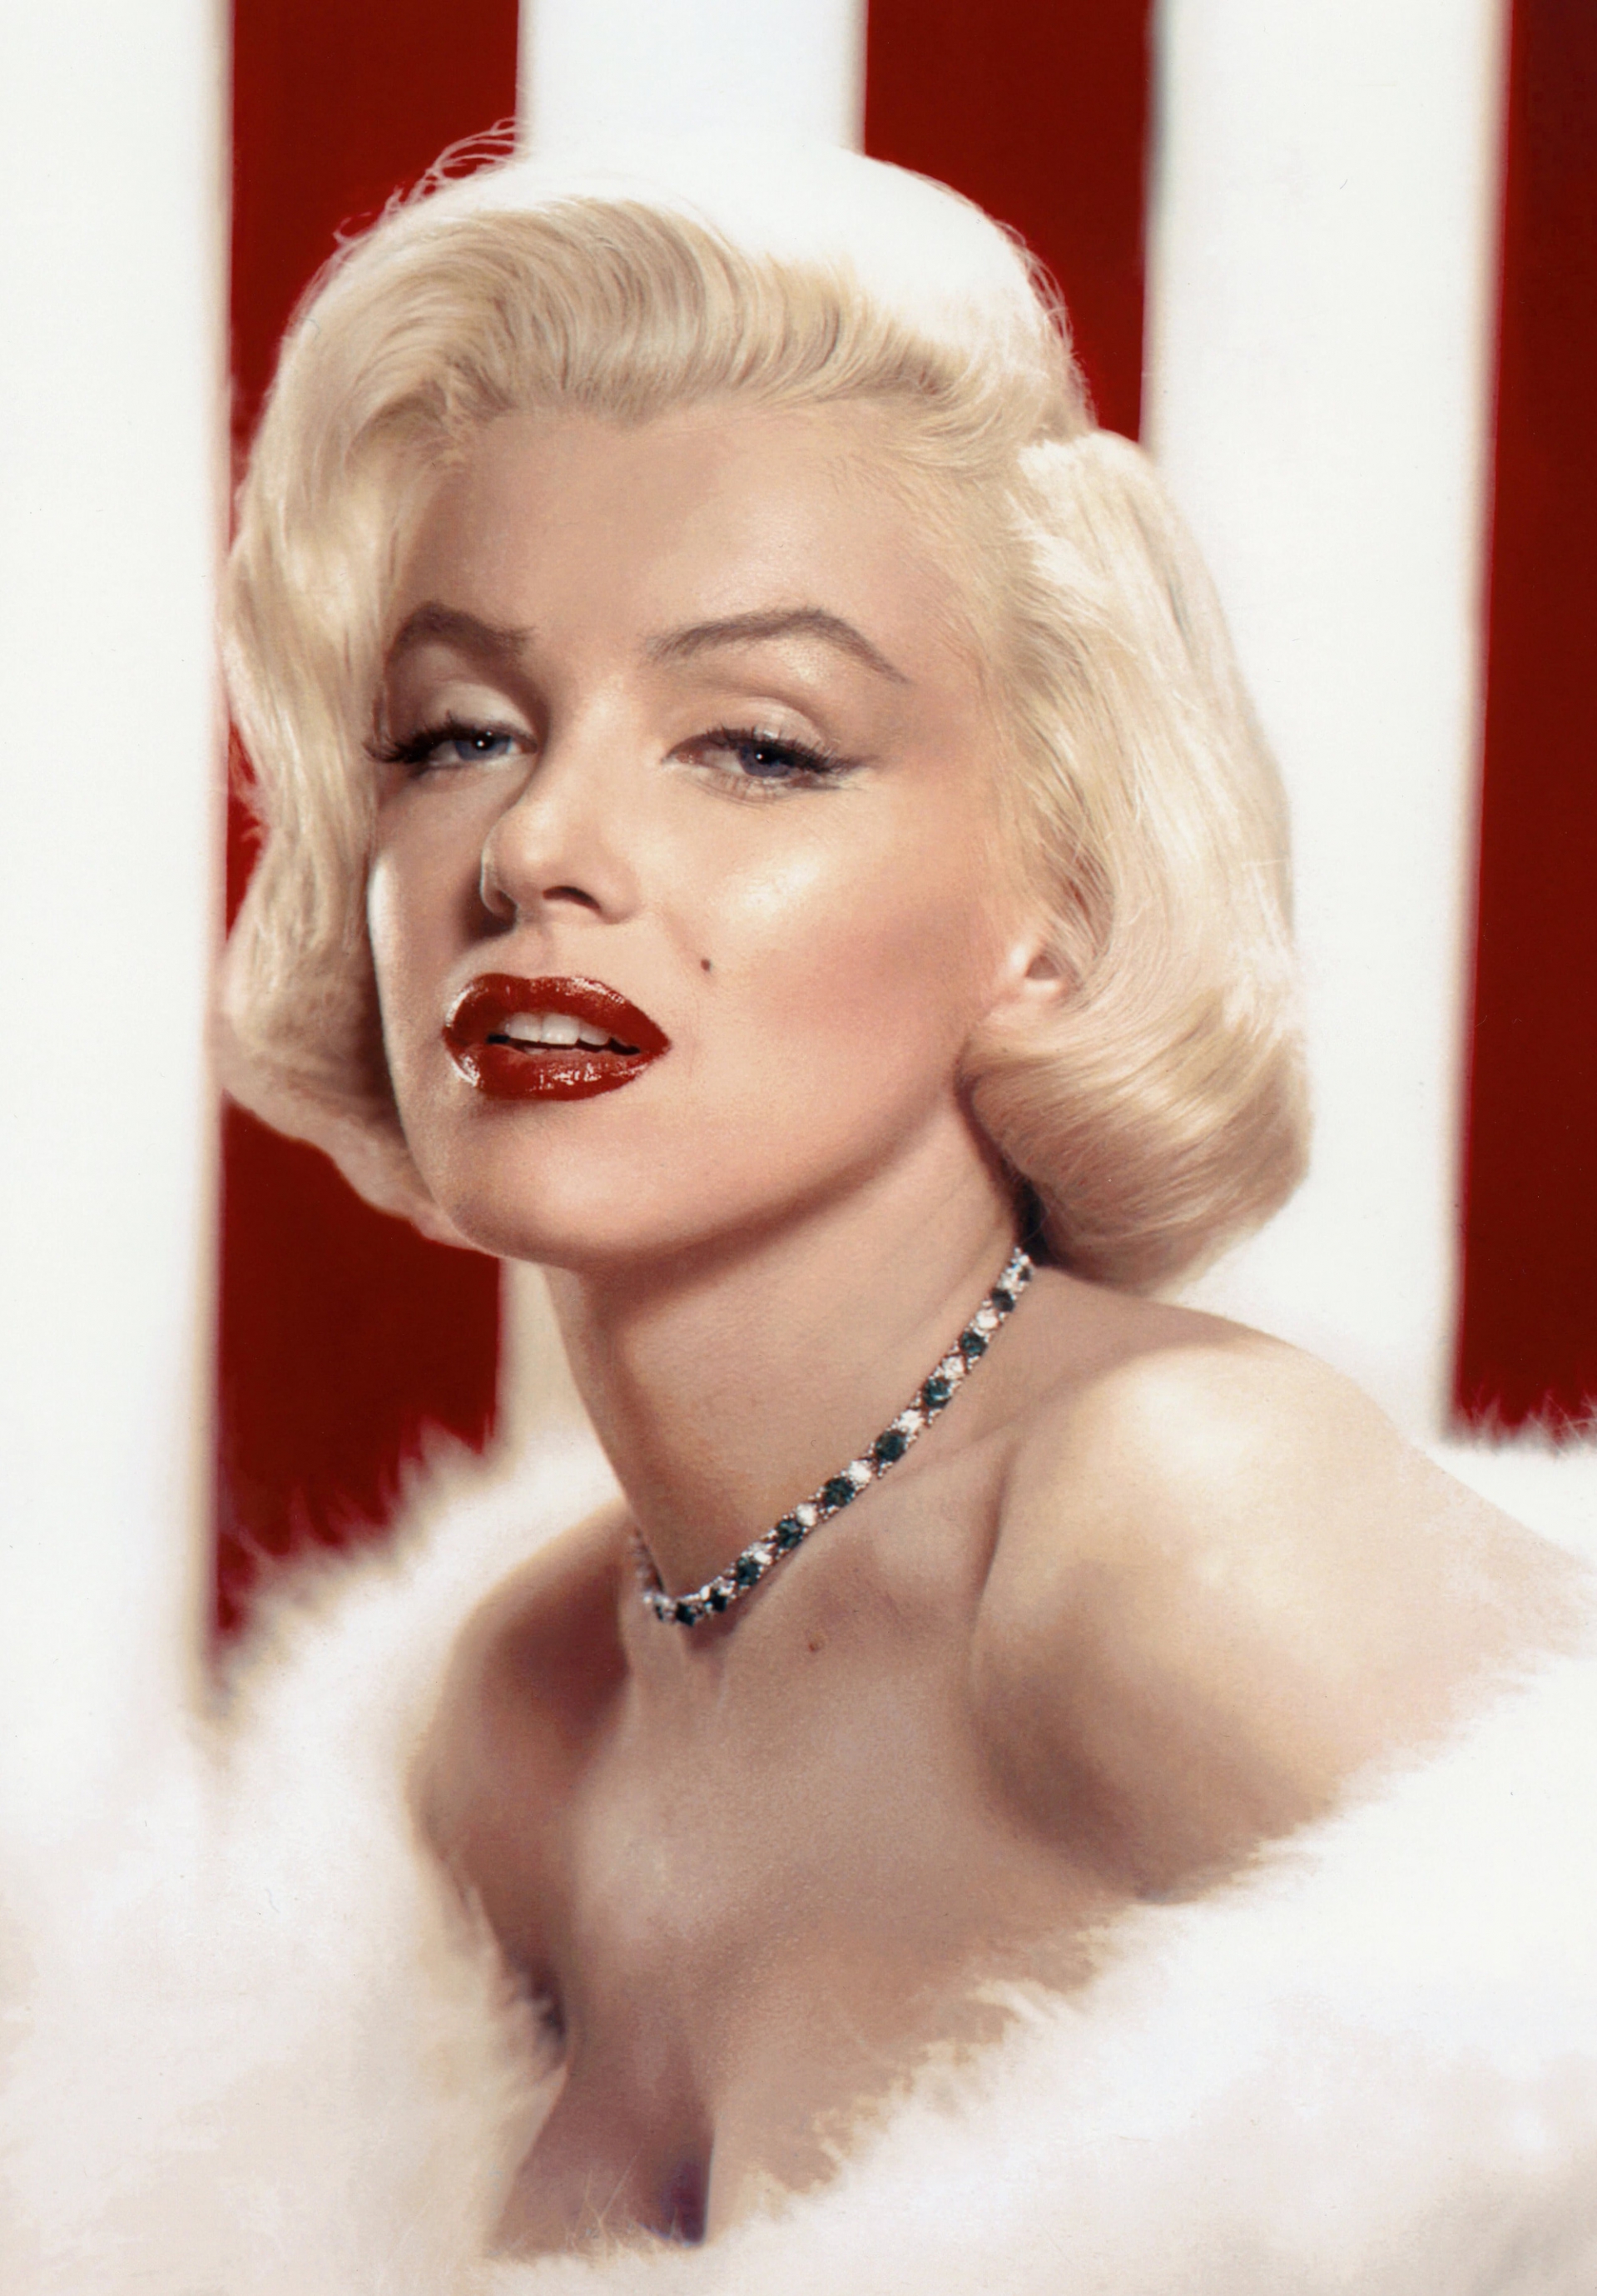 Hình ảnh của Billie Eilish khiến nhiều người liên tưởng đến biểu tượng Hollywood một thời Marilyn Monroe